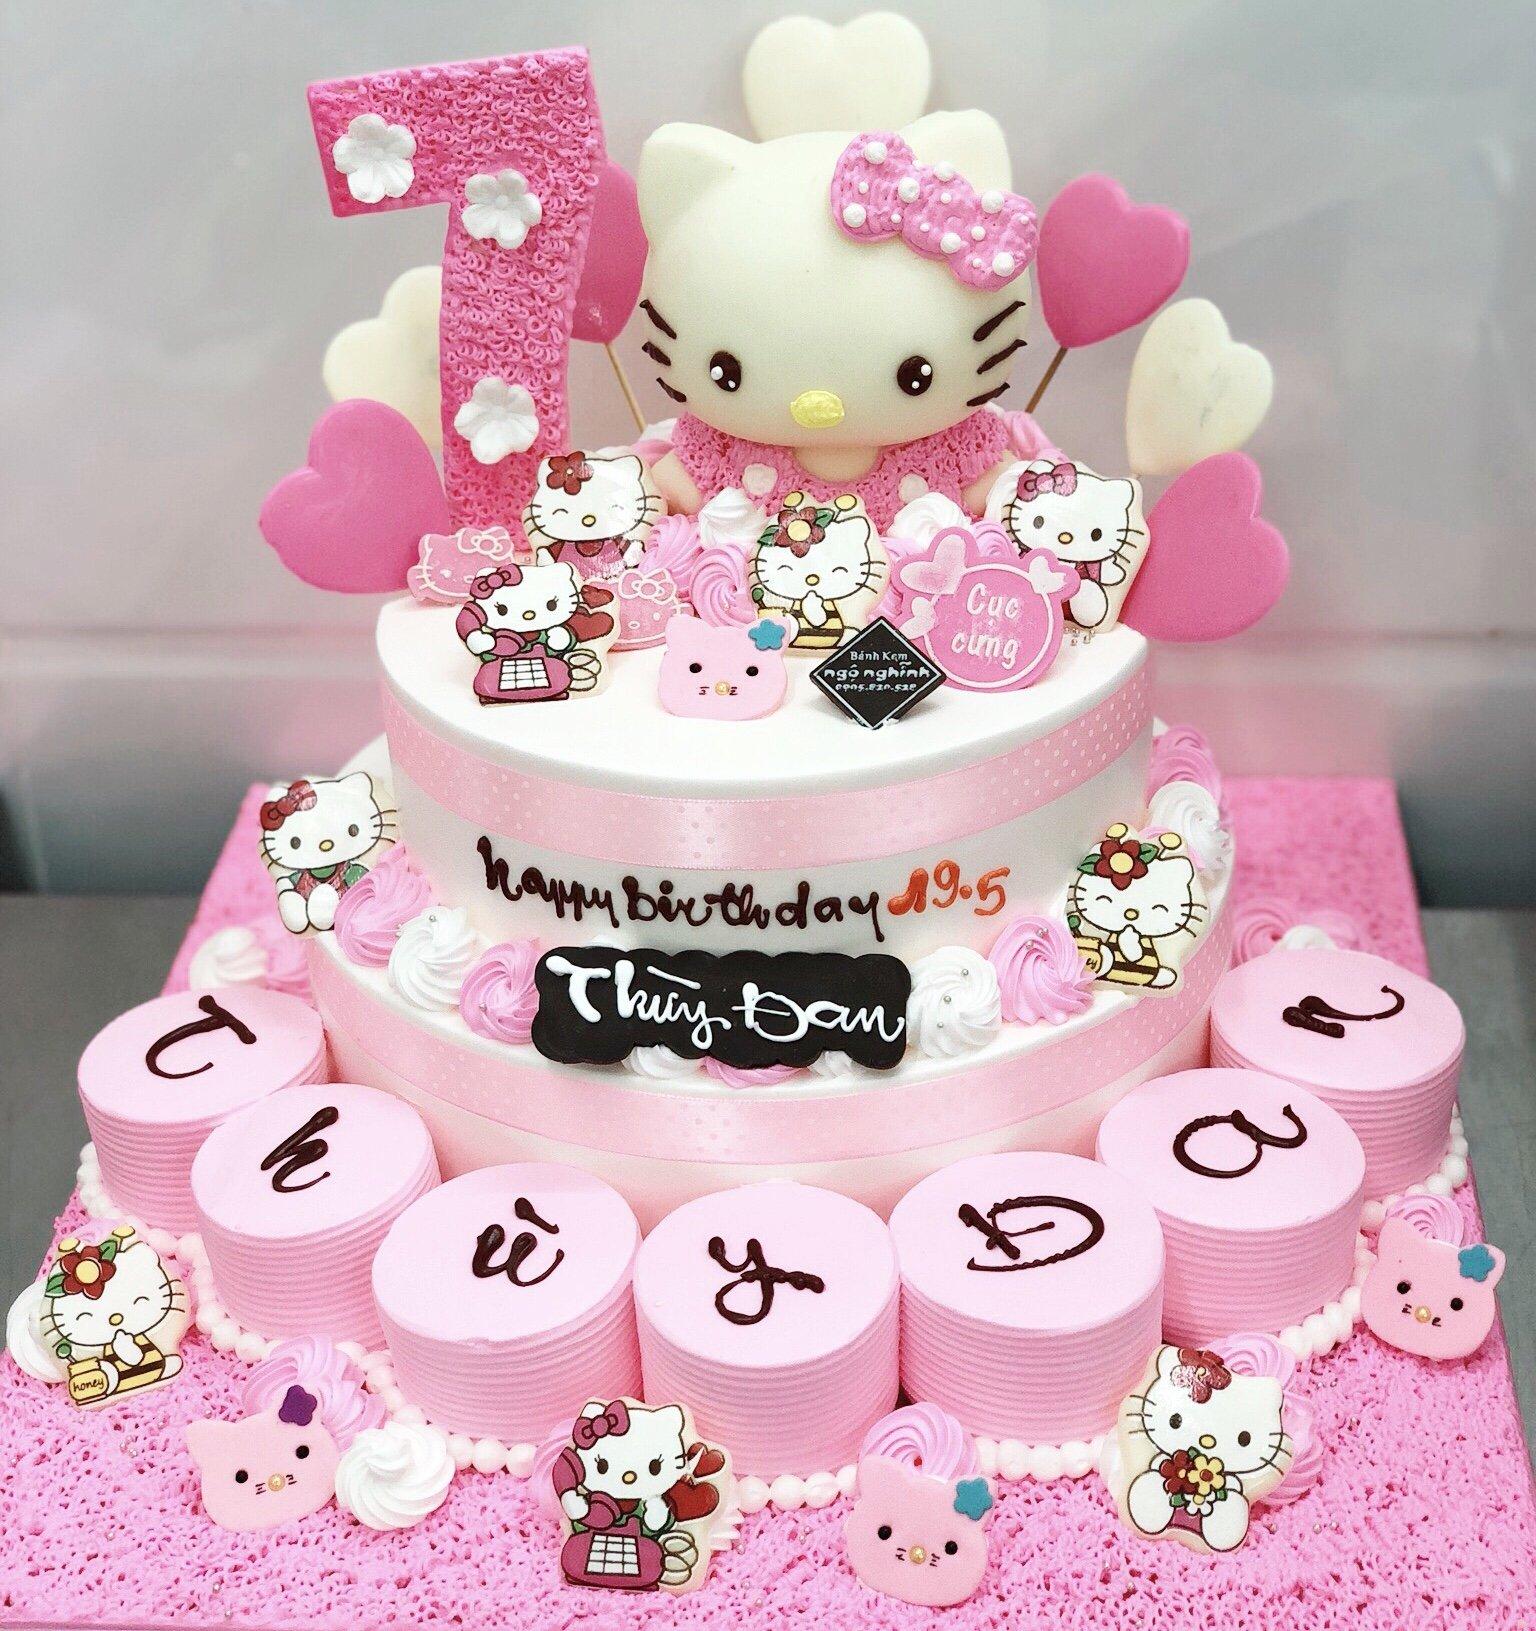 Bánh sinh nhật với những chú mèo Hello Kitty (Ảnh: internet)